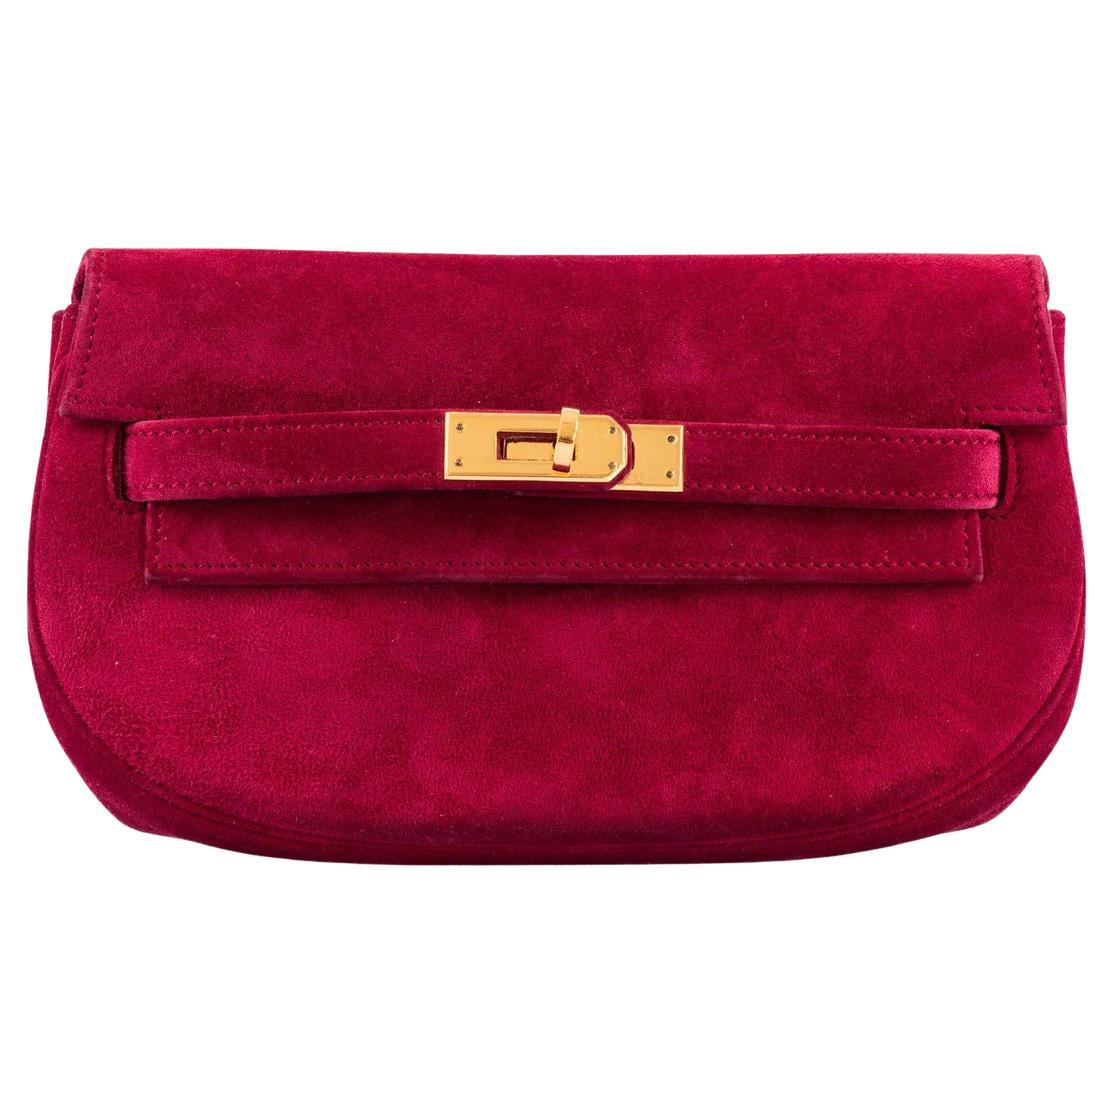 Hermes Kelly Pochette Doblis (Suede) Violet Purple Clutch Bag Gold